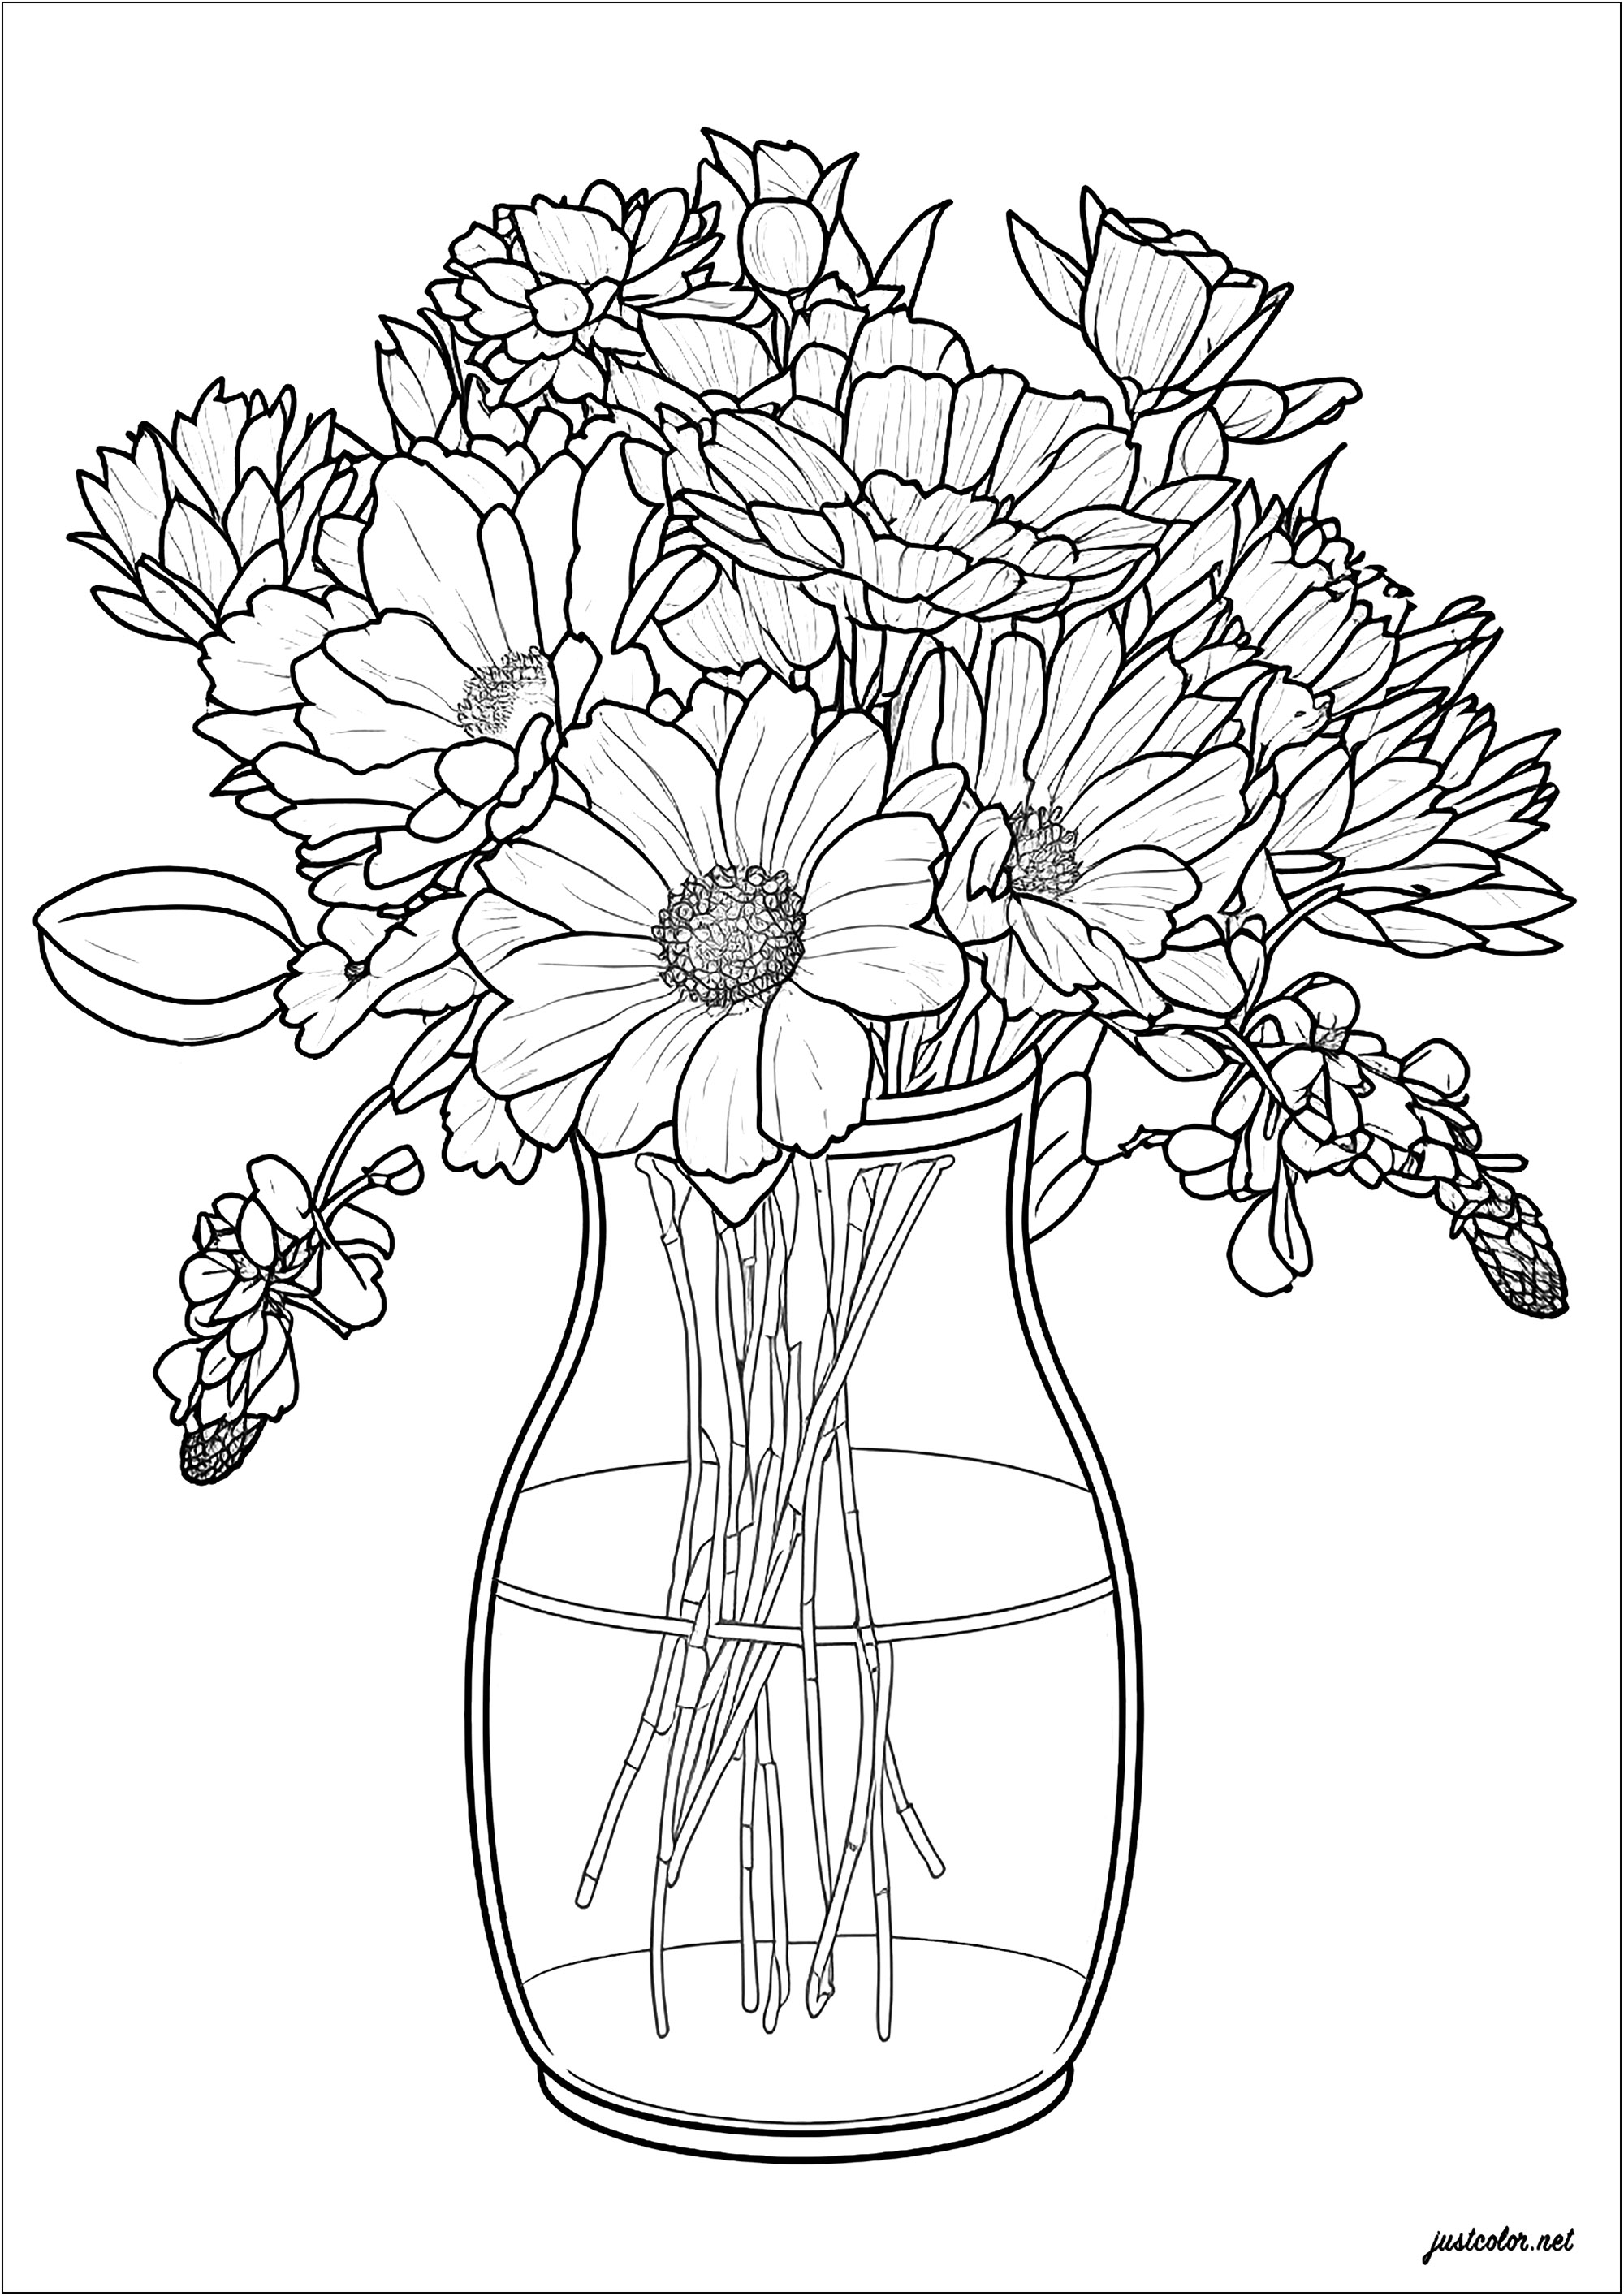 Vase et fleurs délicates. Un joli dessin aux traits fins, représentant de belles fleurs réparties élégamment dans un vase en verre. Un excellent moyen de passer un agréable moment en créant quelque chose d'unique et de beau.